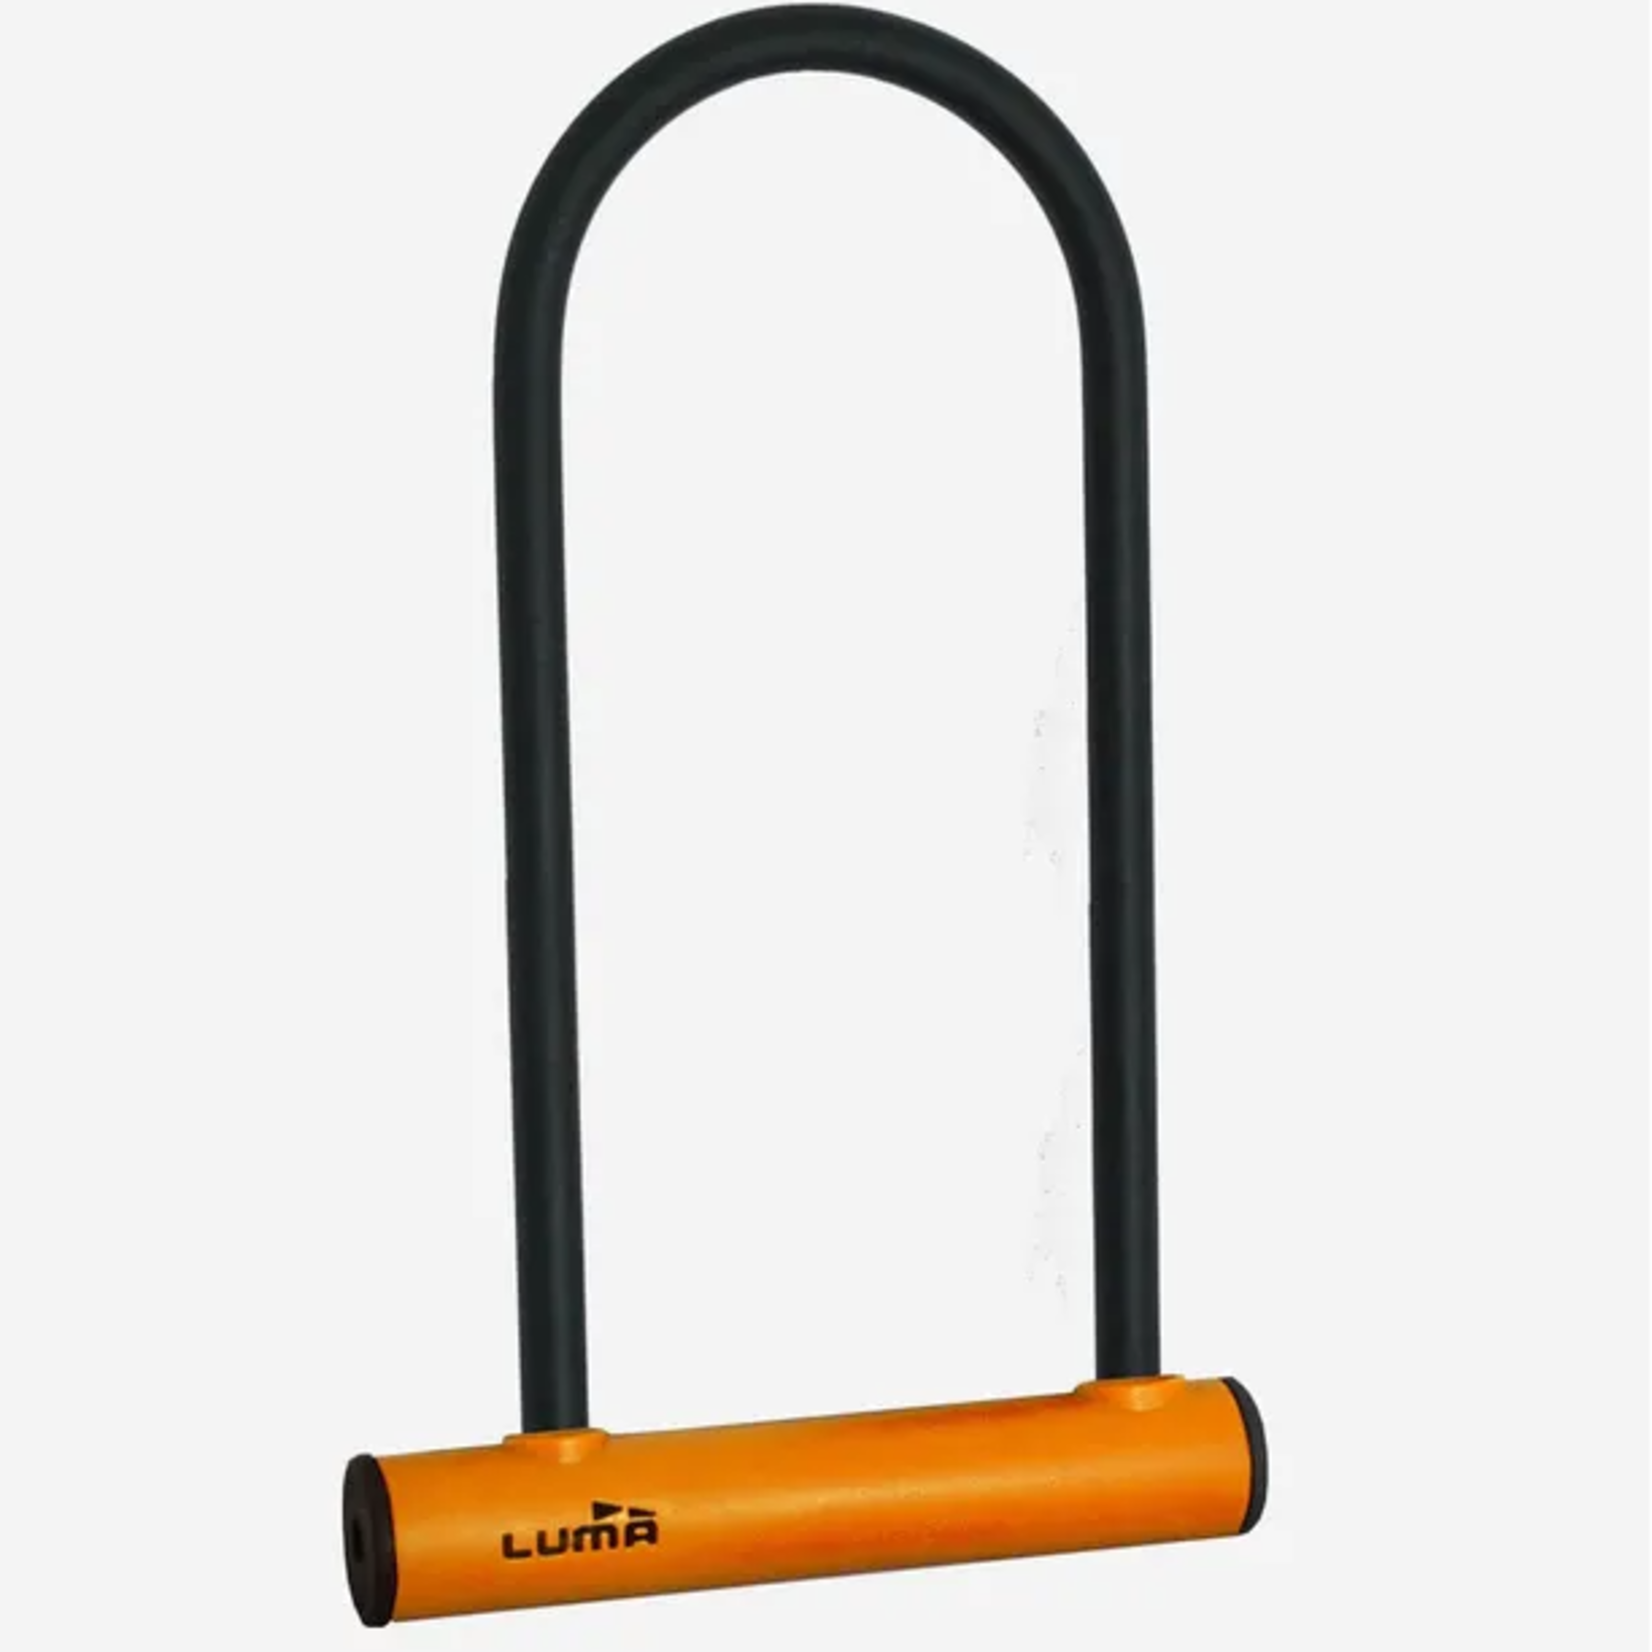 Lock , U lock 180 x 320mm, 12mm bar thickness,  Orange receiver, LUMA No1 lock brand in Spain, Box qty 4